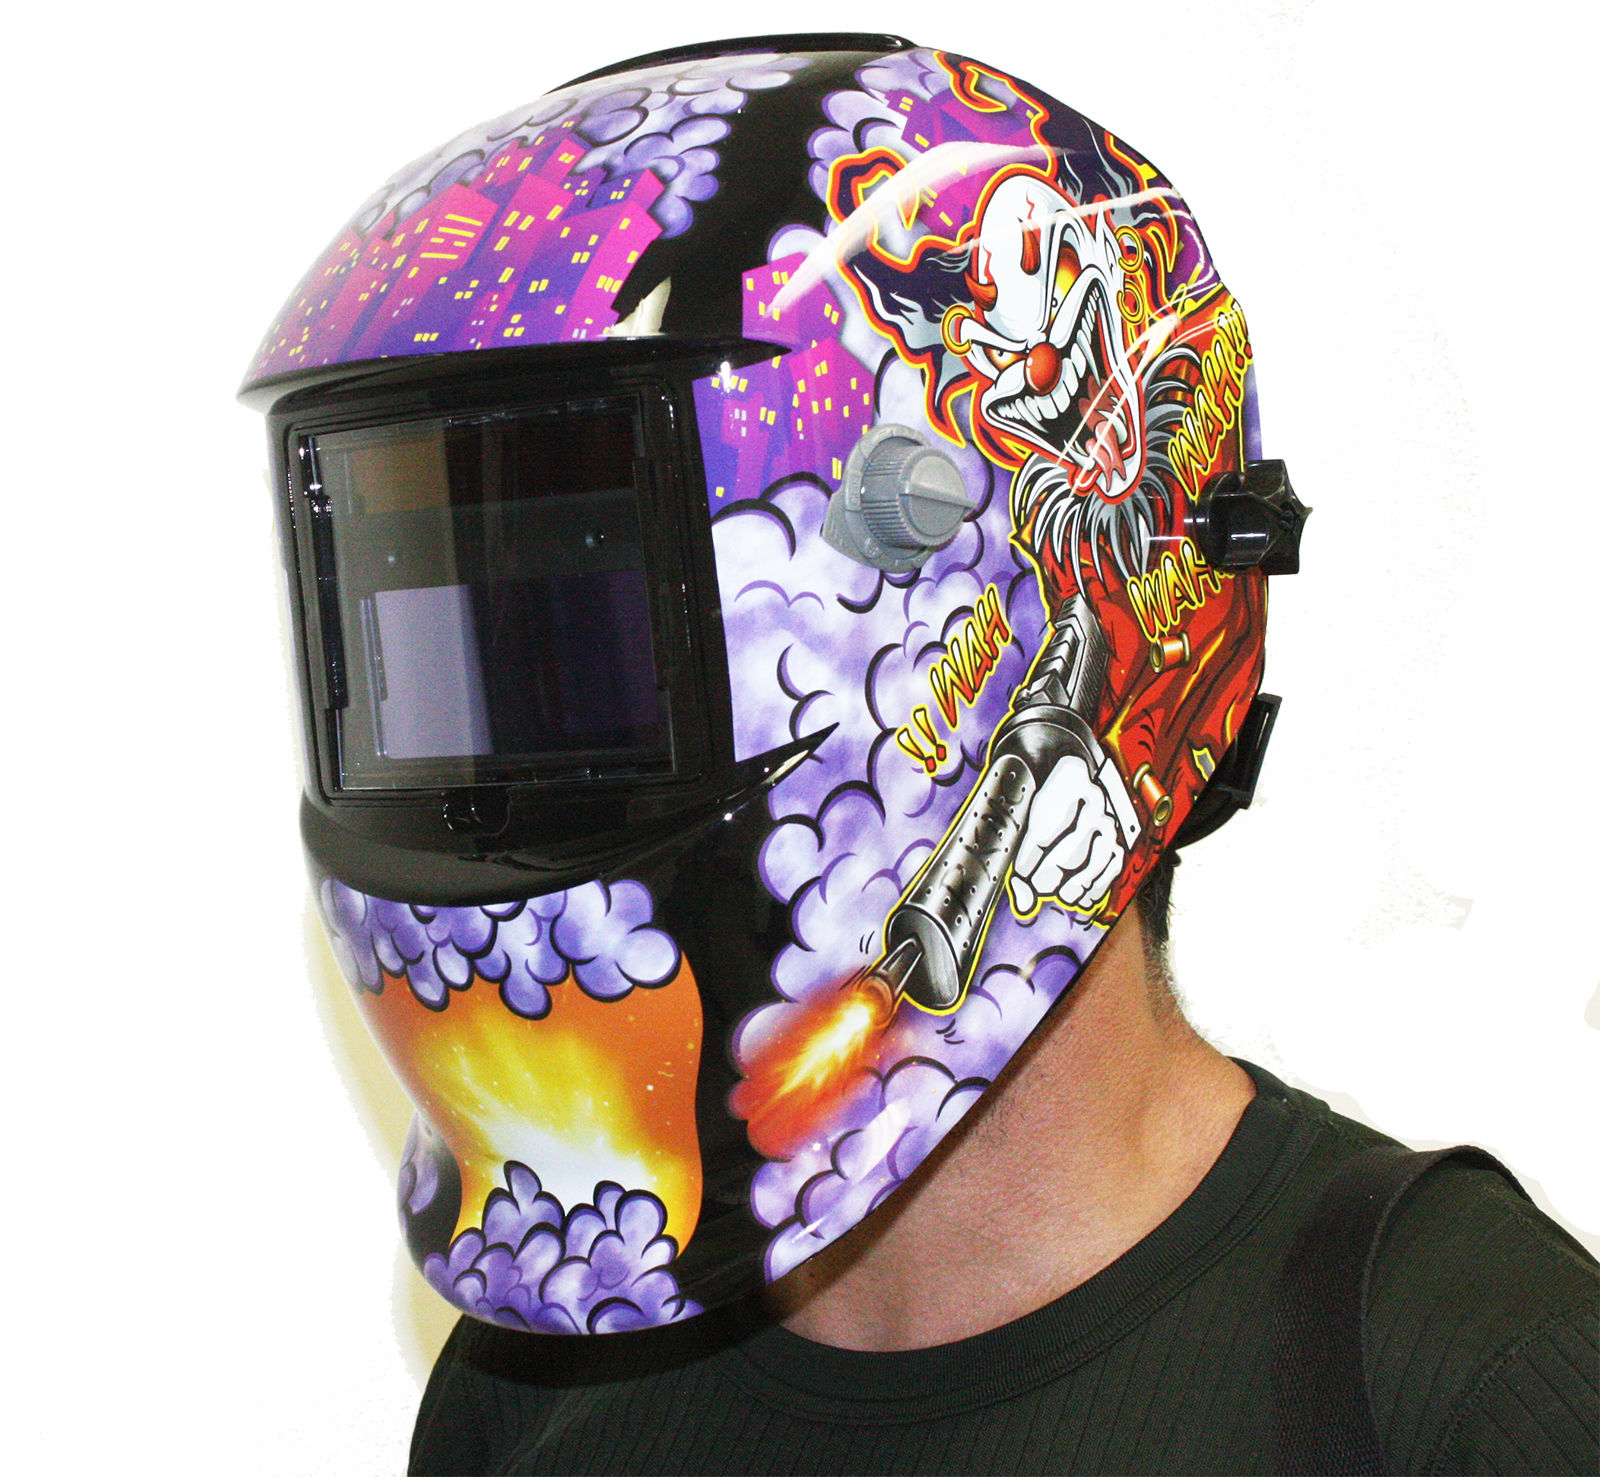 Auto Darkening Welders Helmet Mask Welding Grinding Function MIG TIG ARC TE848 